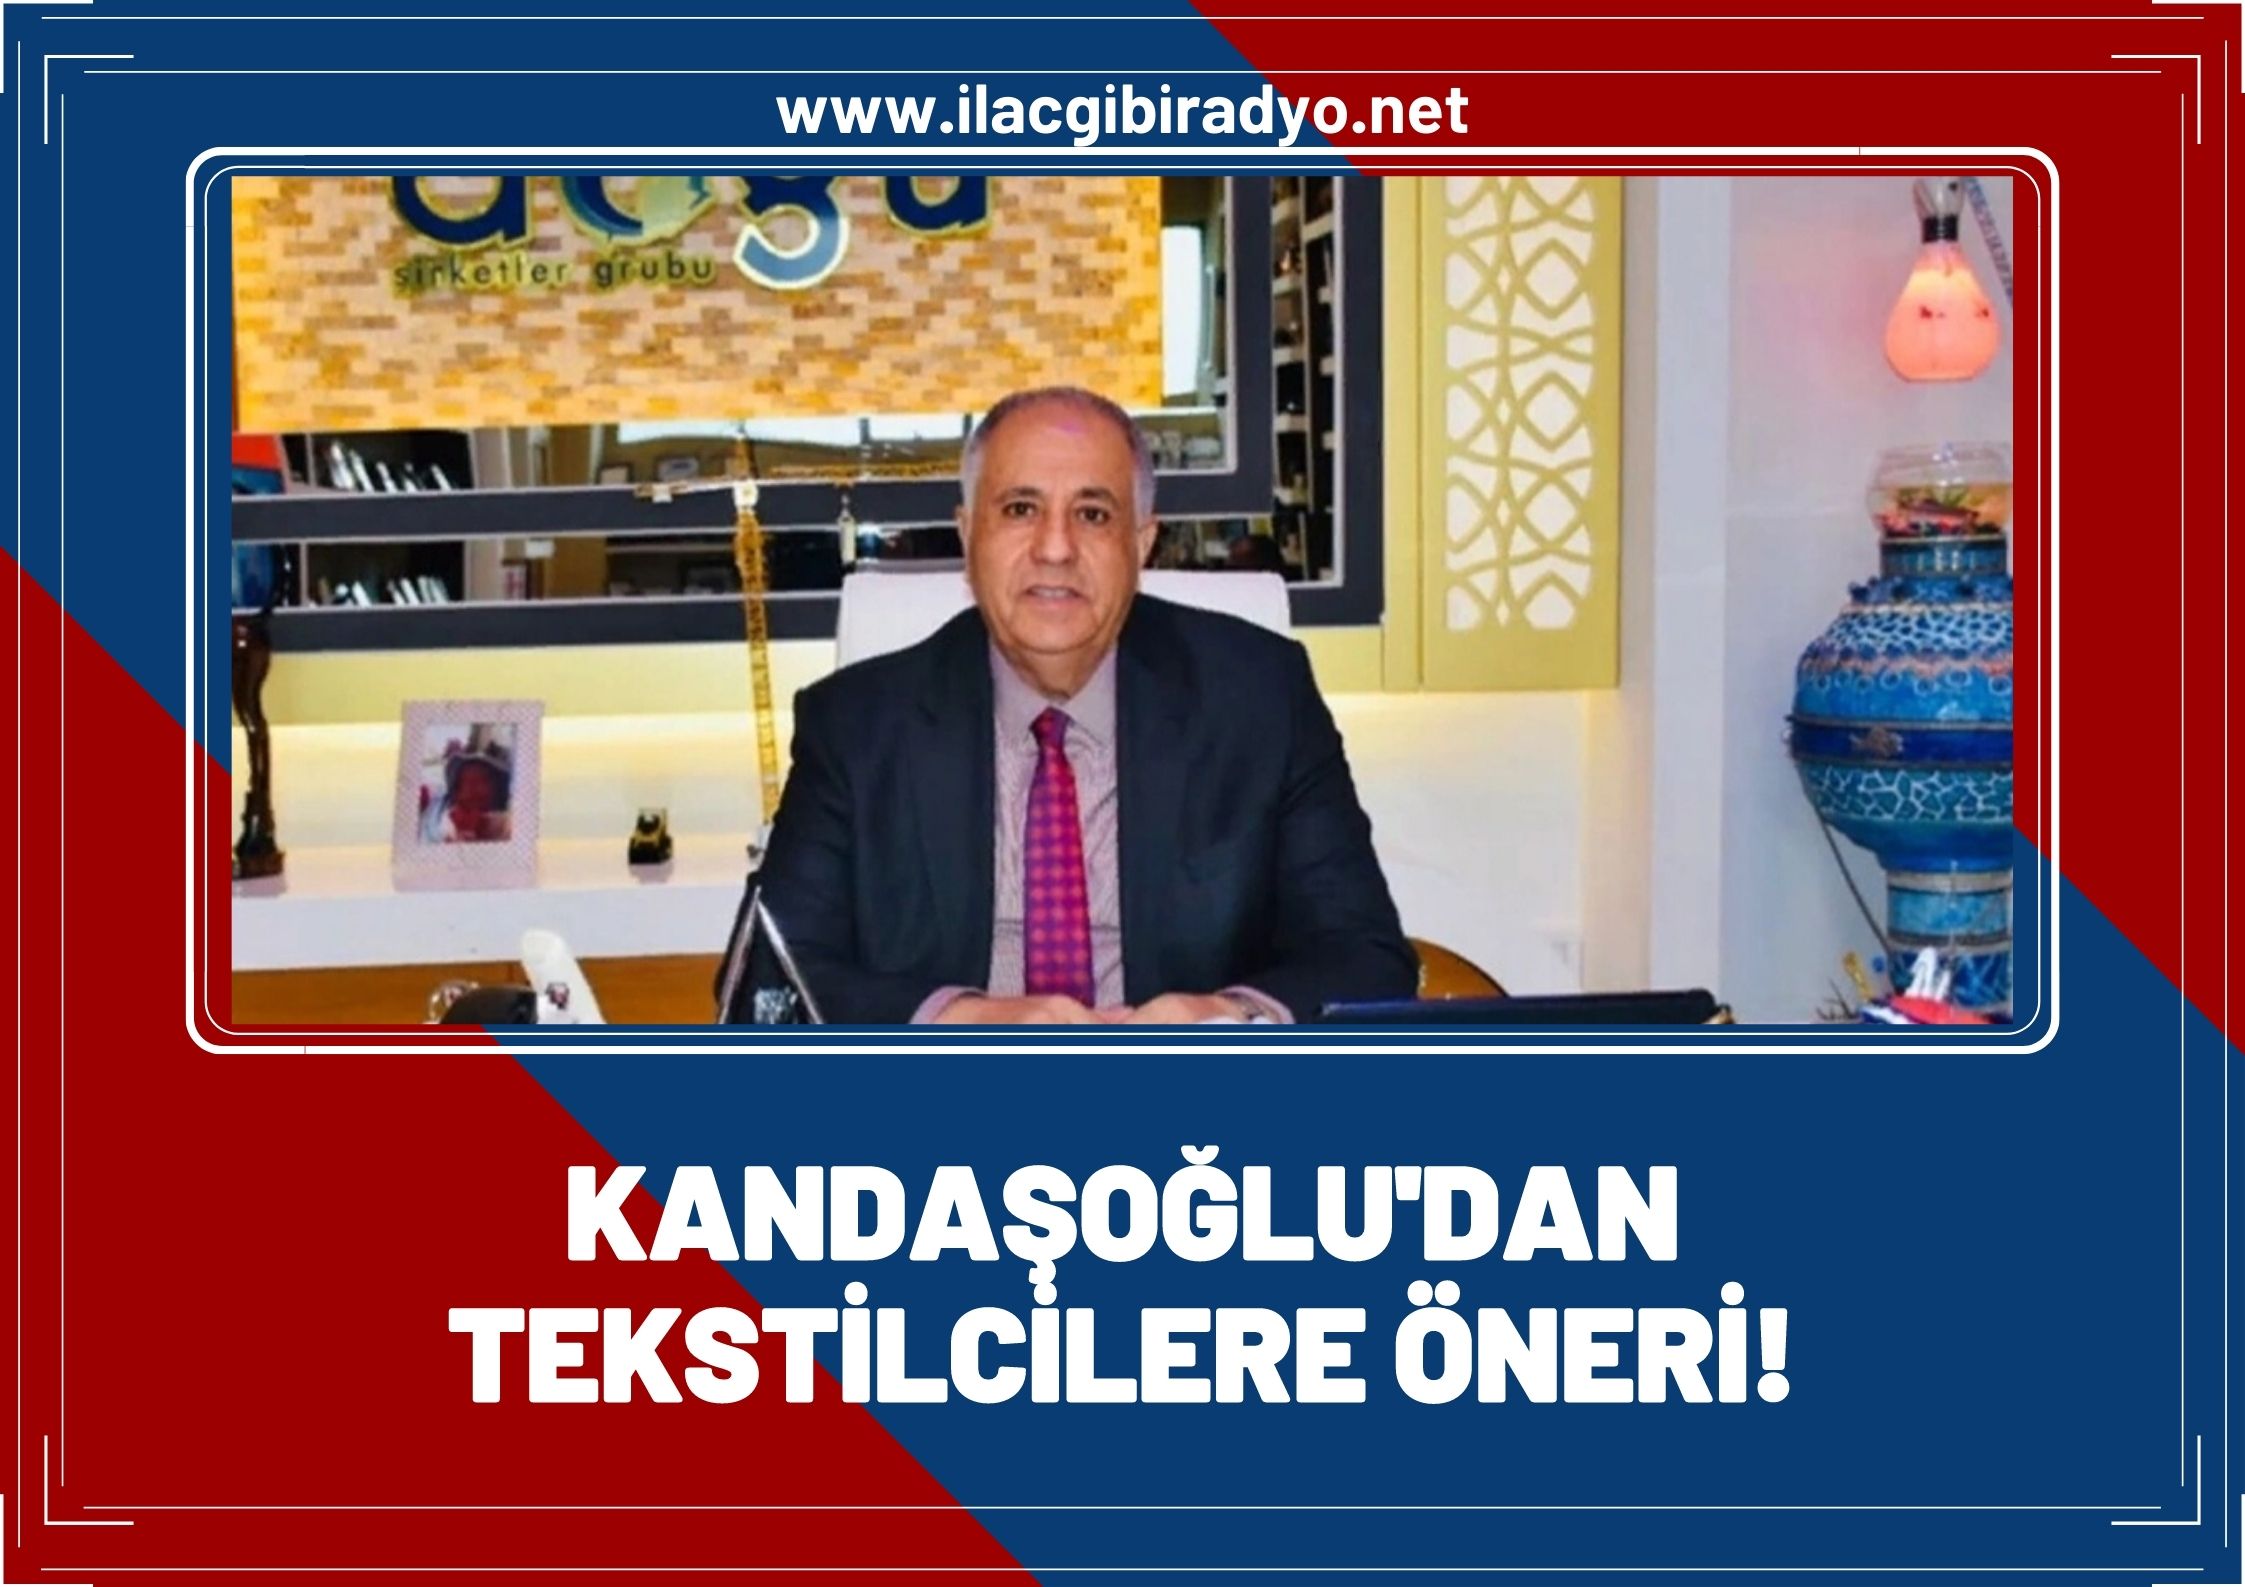 Kandaşoğlu’ndan tekstilcilere öneri